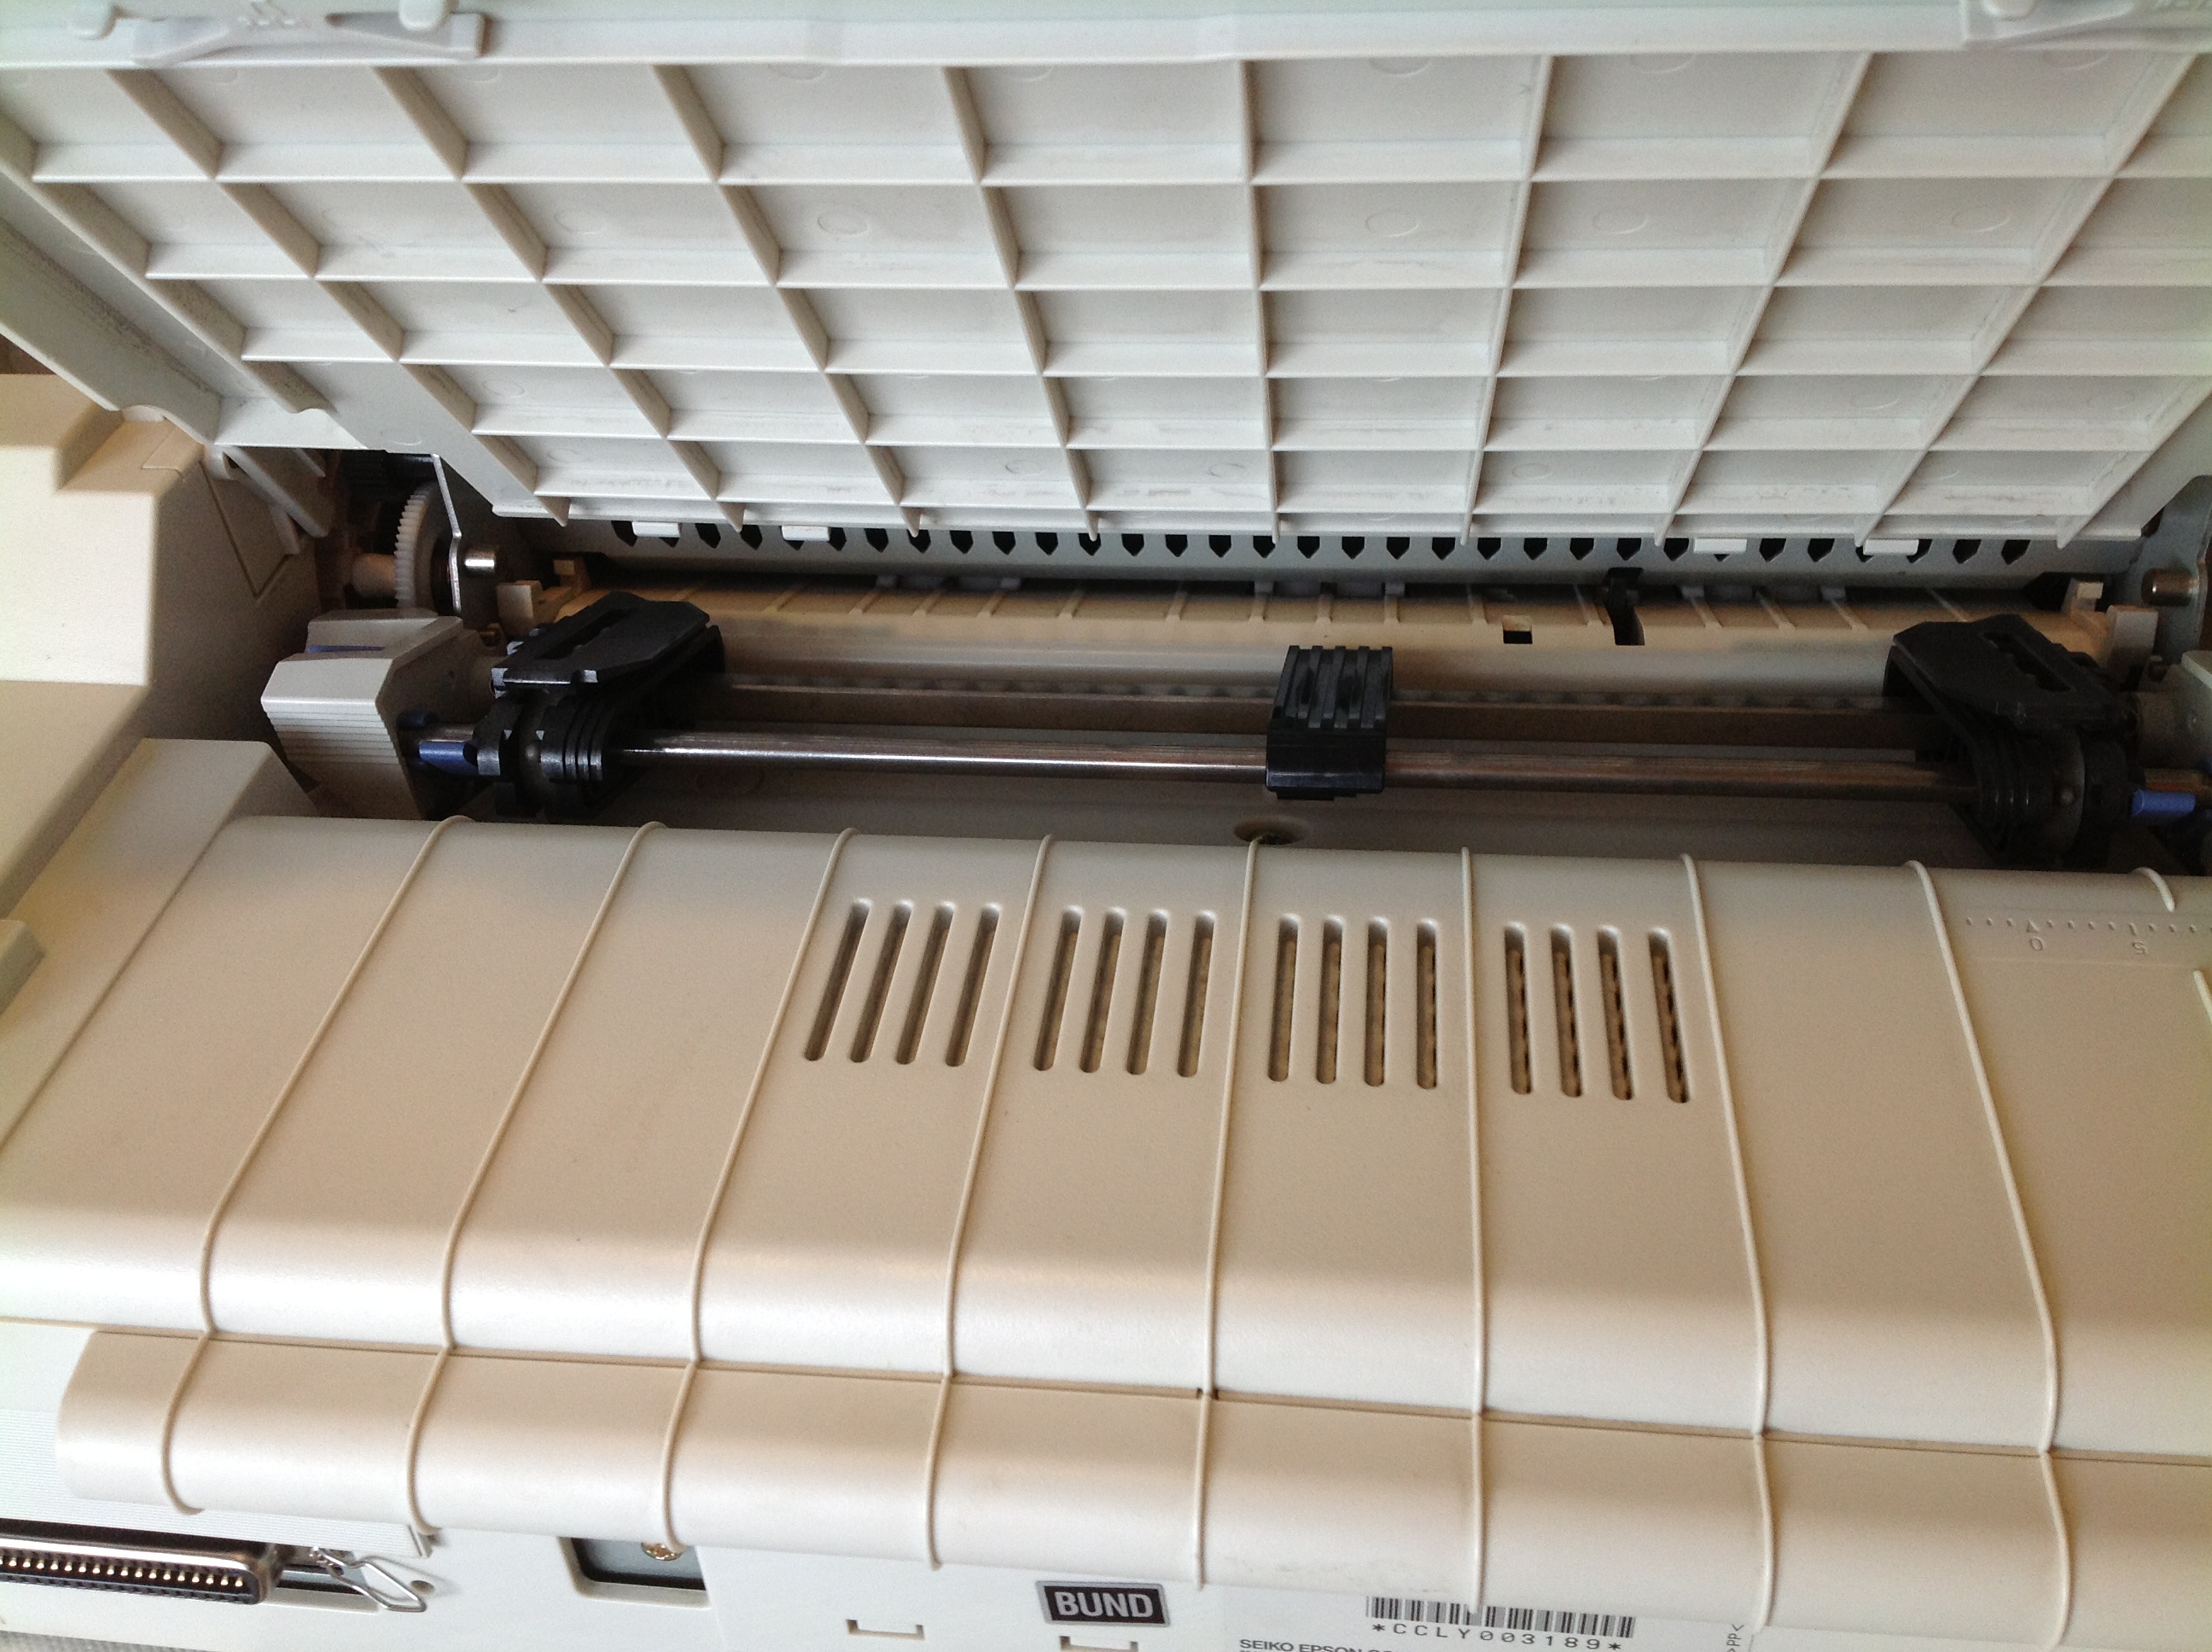 Epson LQ-580 Matrixdrucker, Nadeldrucker mit 24 V - Anschluß